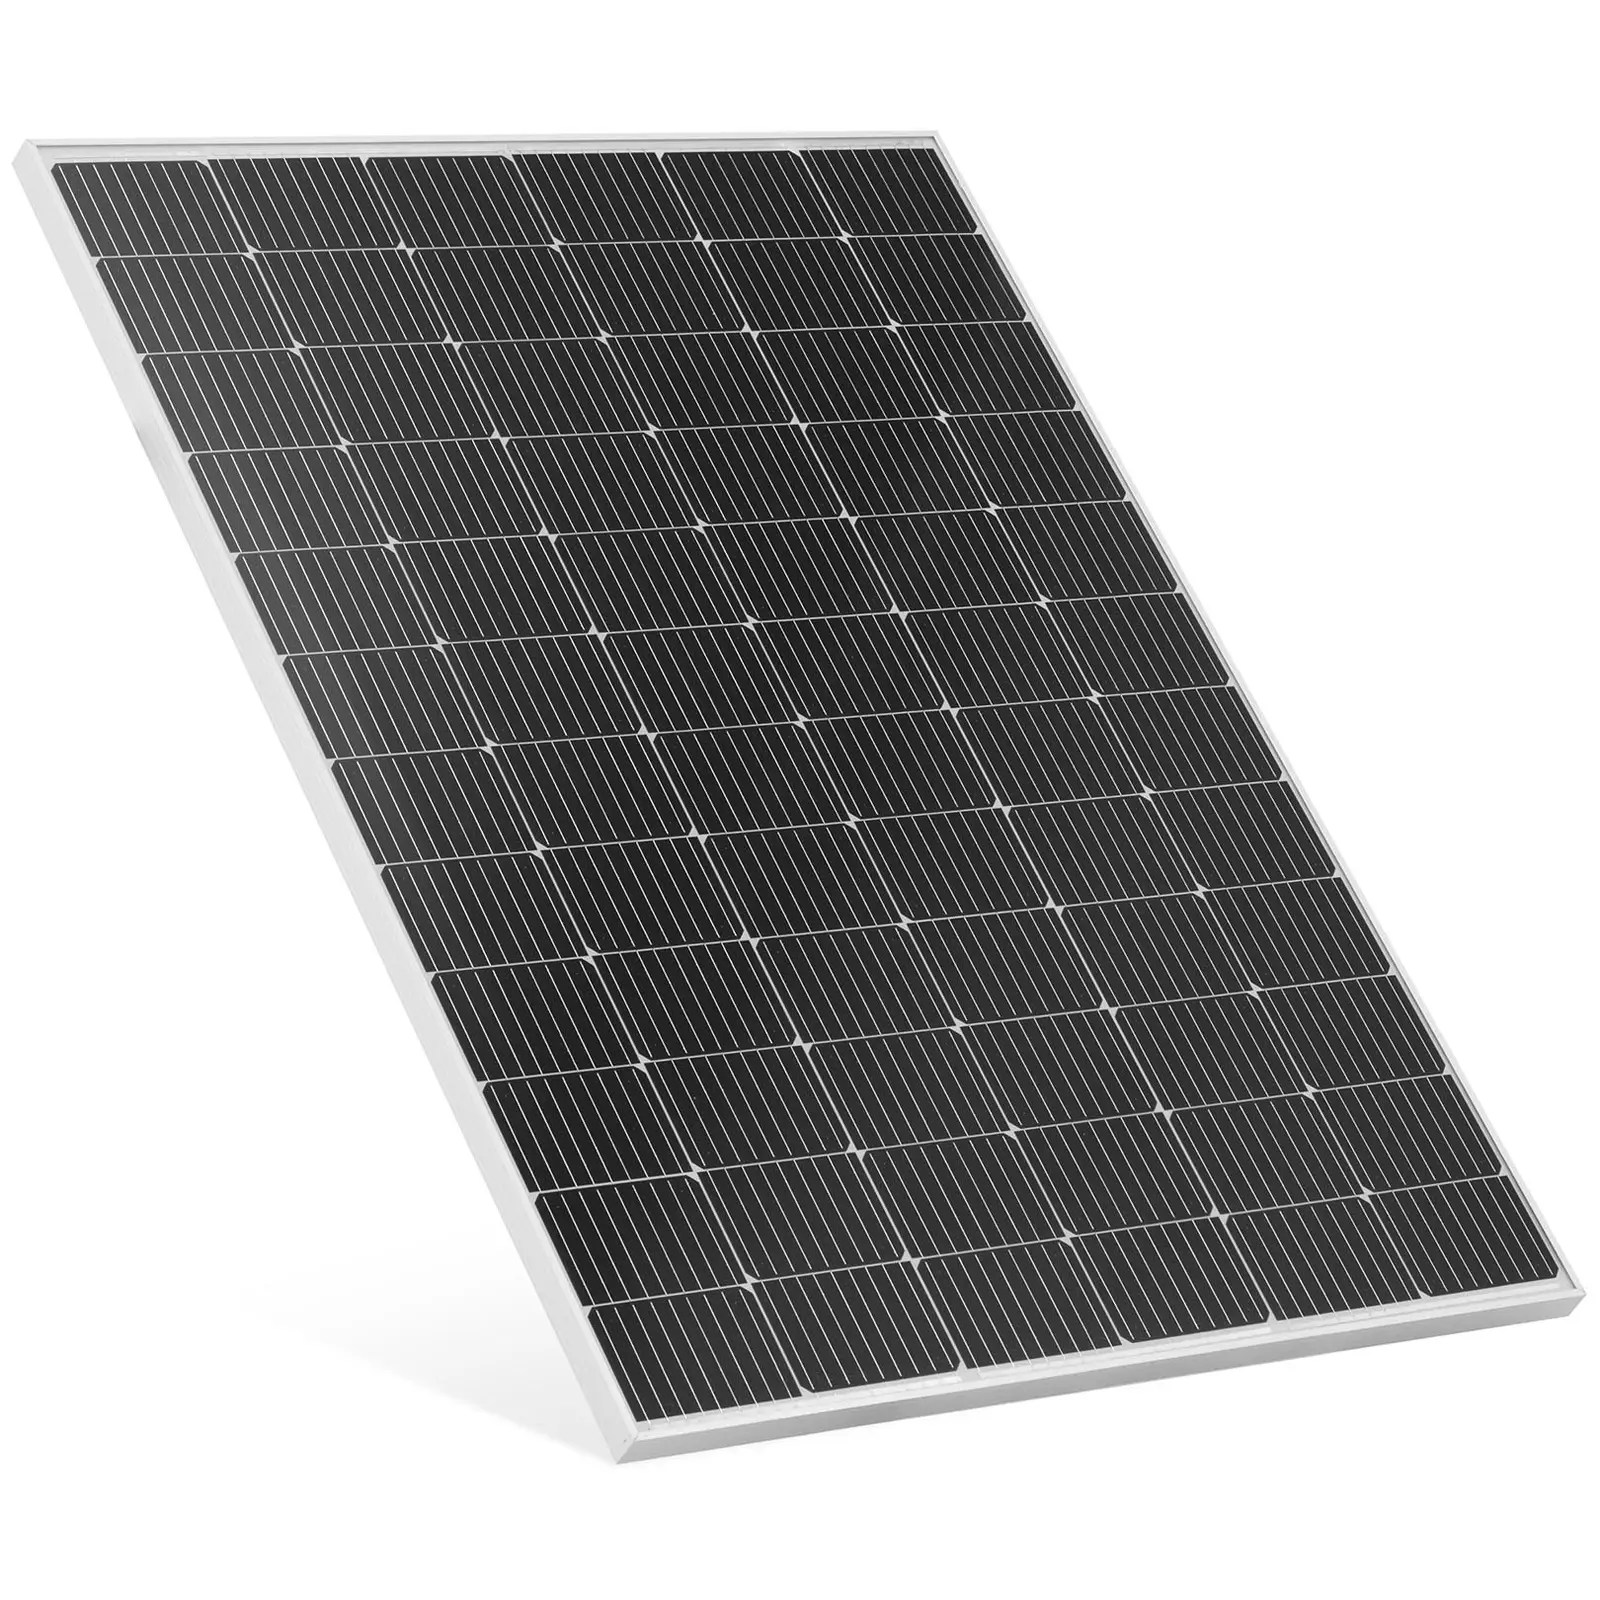 Monokristalni solarni panel - 290 W - 48.38 V - s premosnom diodom